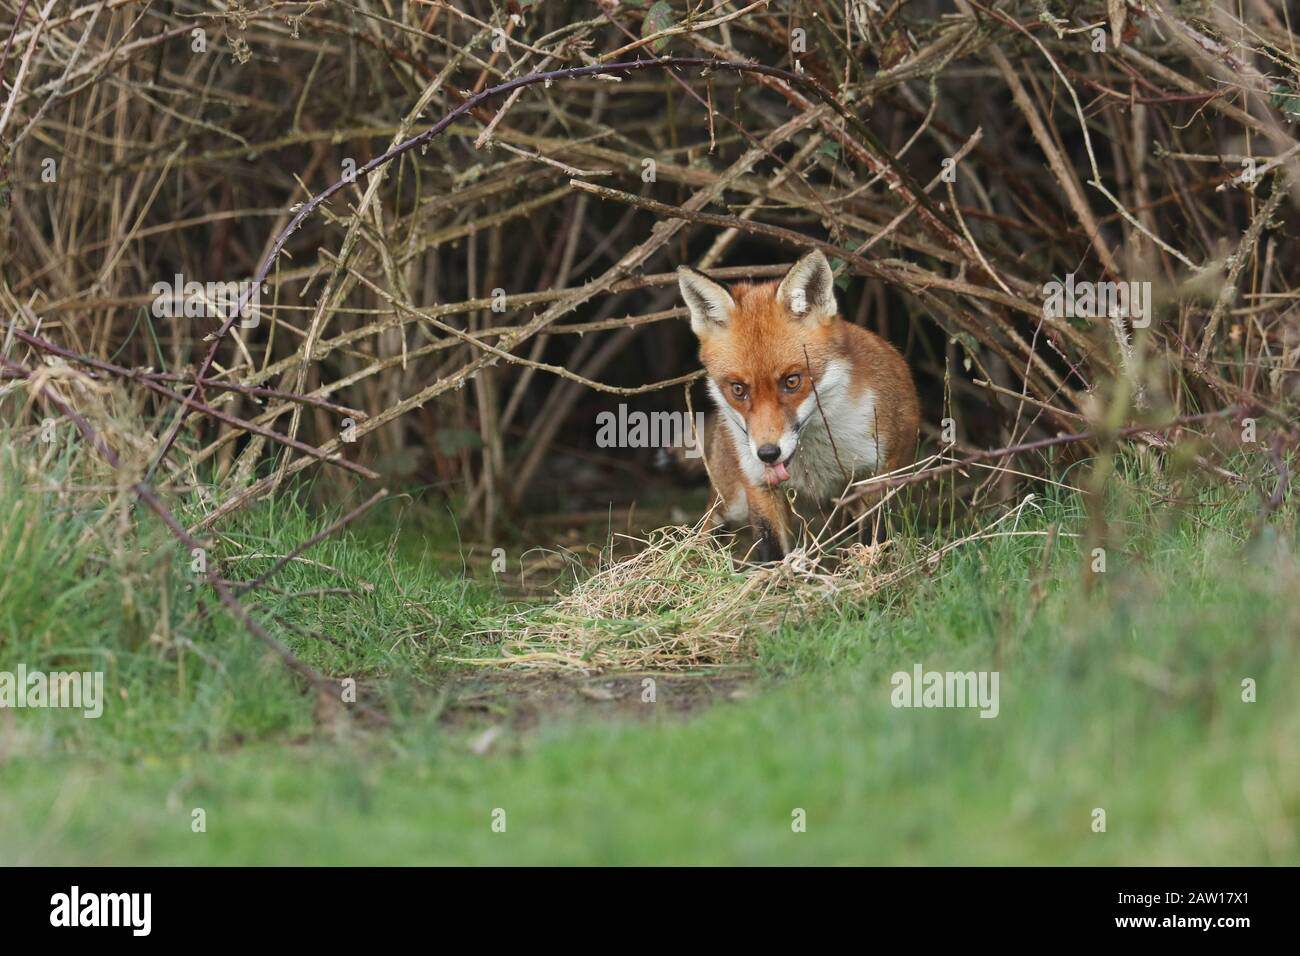 Une magnifique renard rouge sauvage, Vulpes vulpes, émergeant de son coin au crépuscule pour aller à la chasse. Il tire sa langue. Banque D'Images